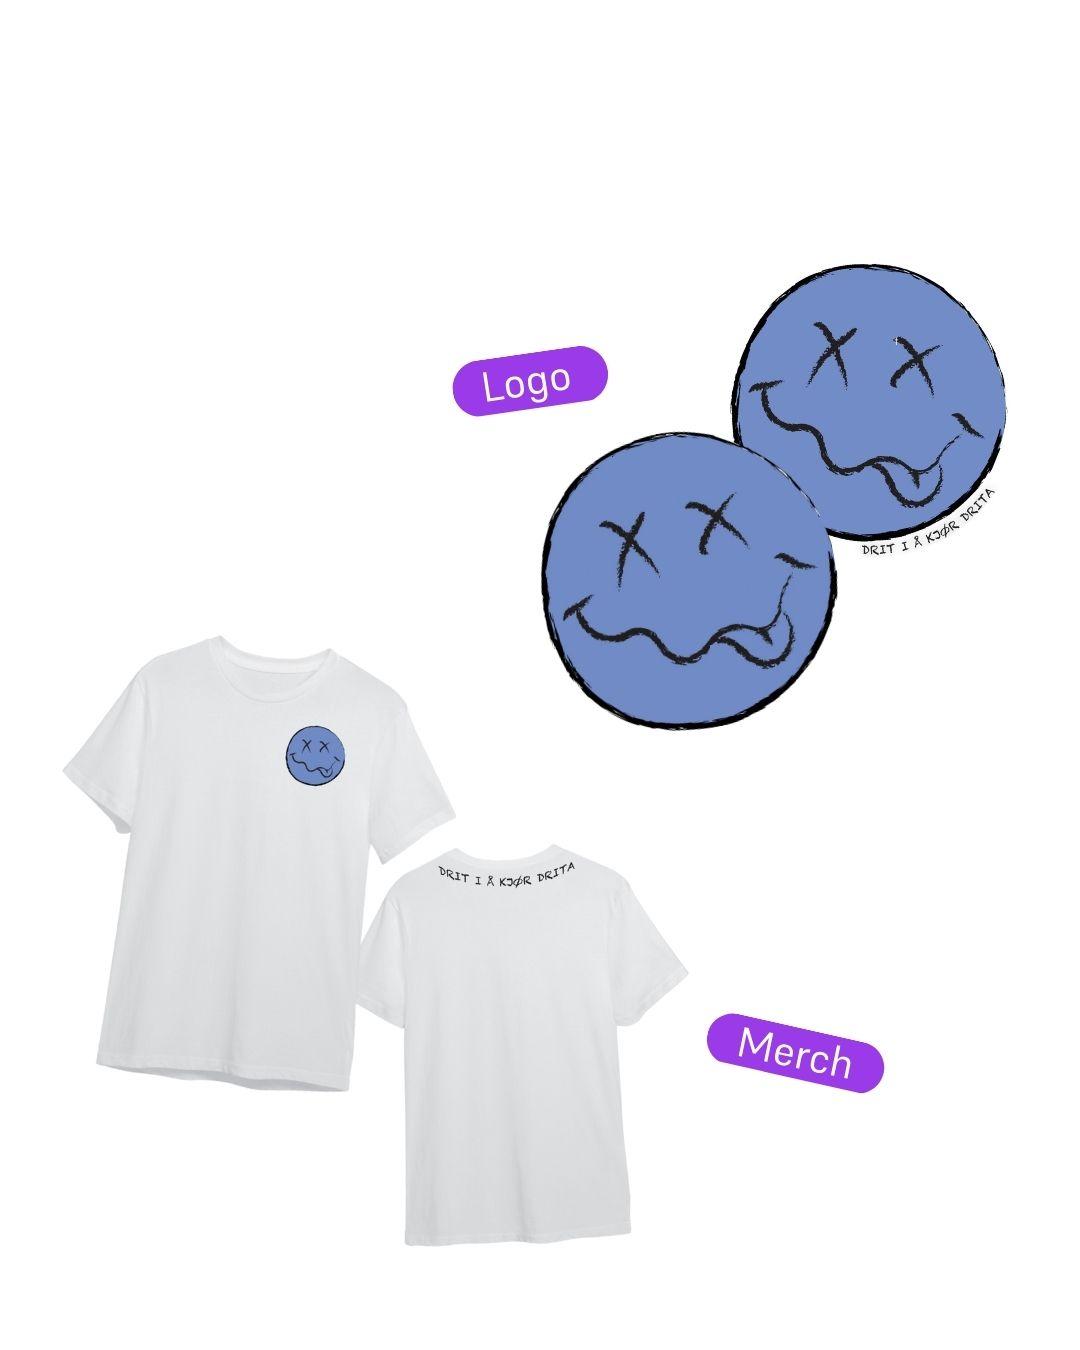 Merchandise med teksten "Drit i å kjør drita" på en hvit t-skjorte. Logoen er en rund blå smiley med kryss til øyne og S-formet munn med tungen ute.